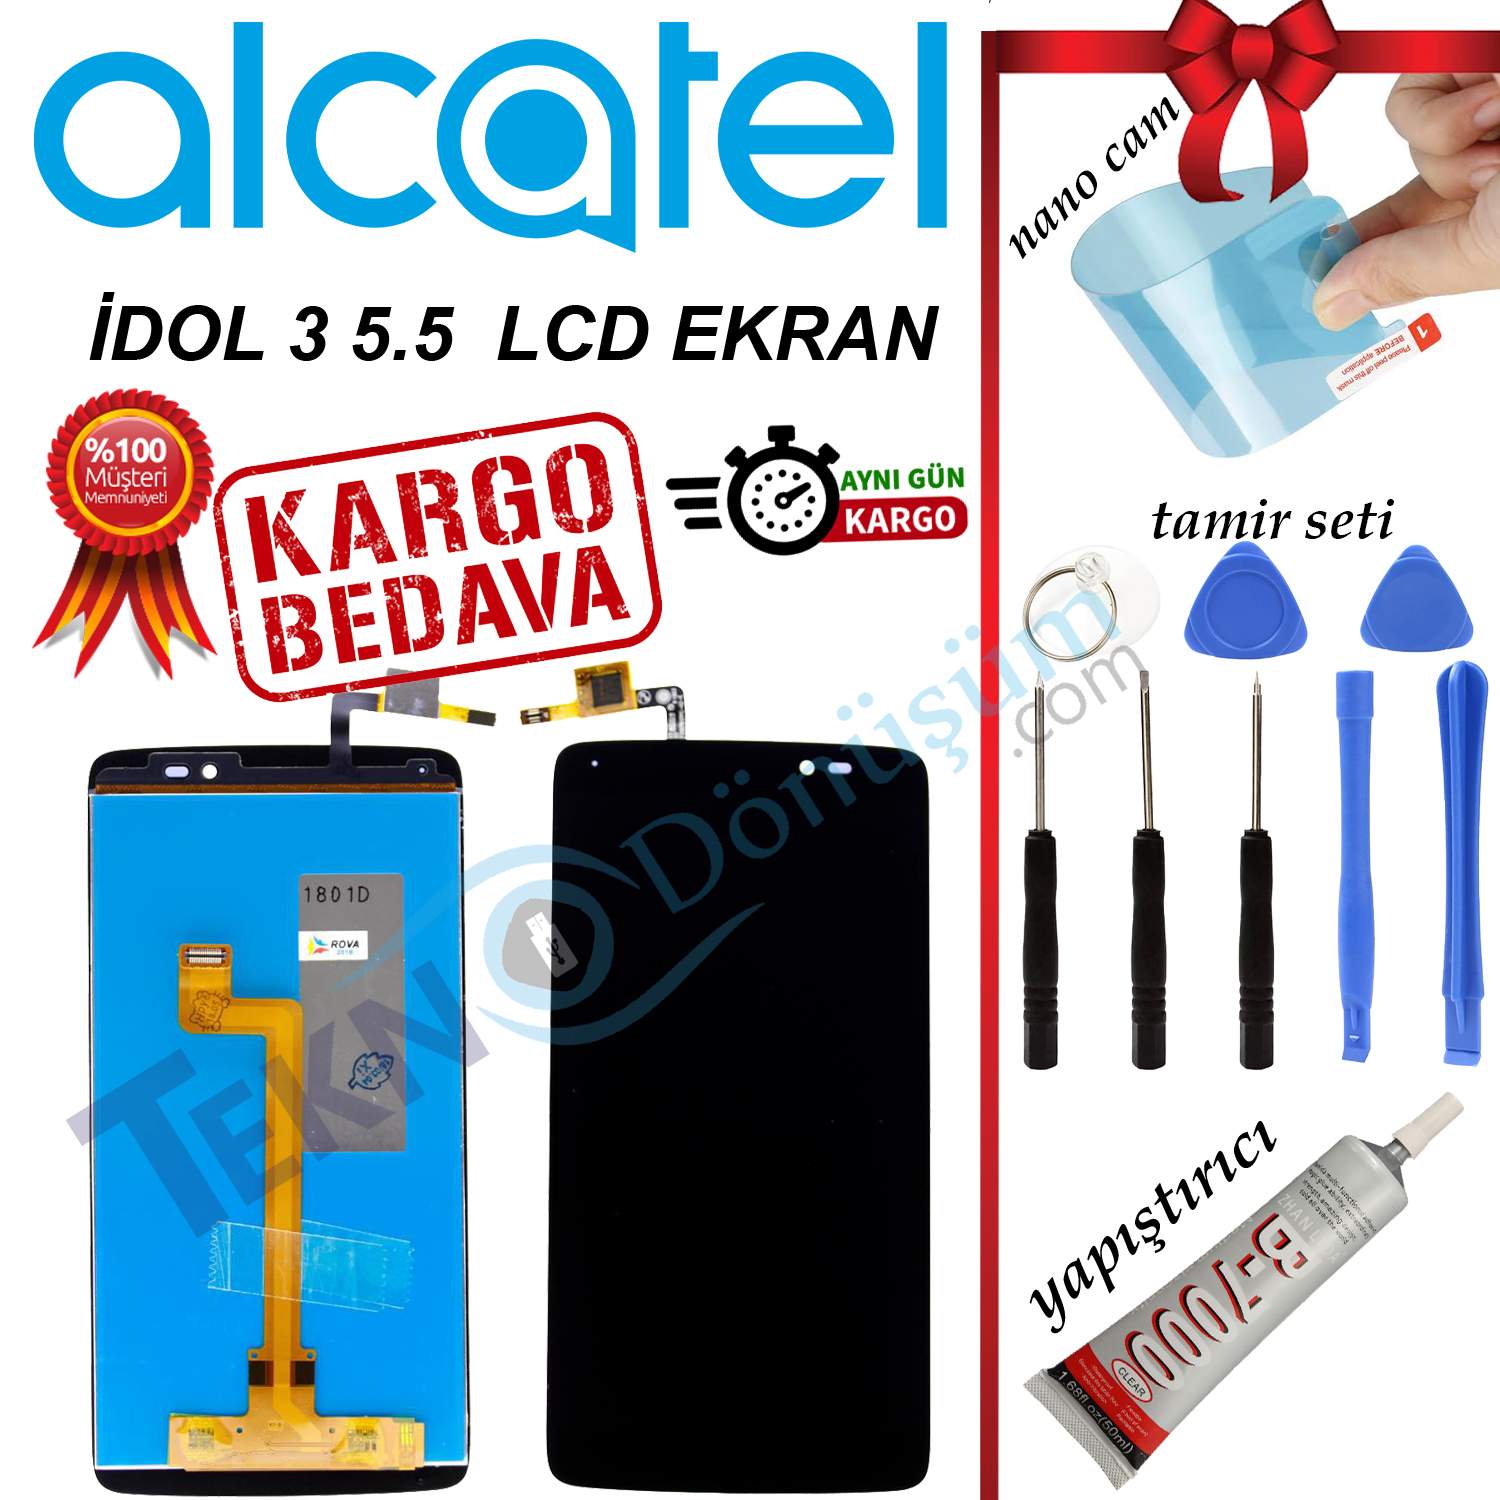 ALCATEL İDOL 3 5.5 ORJİNAL LCD DOKUNMATİK EKRAN